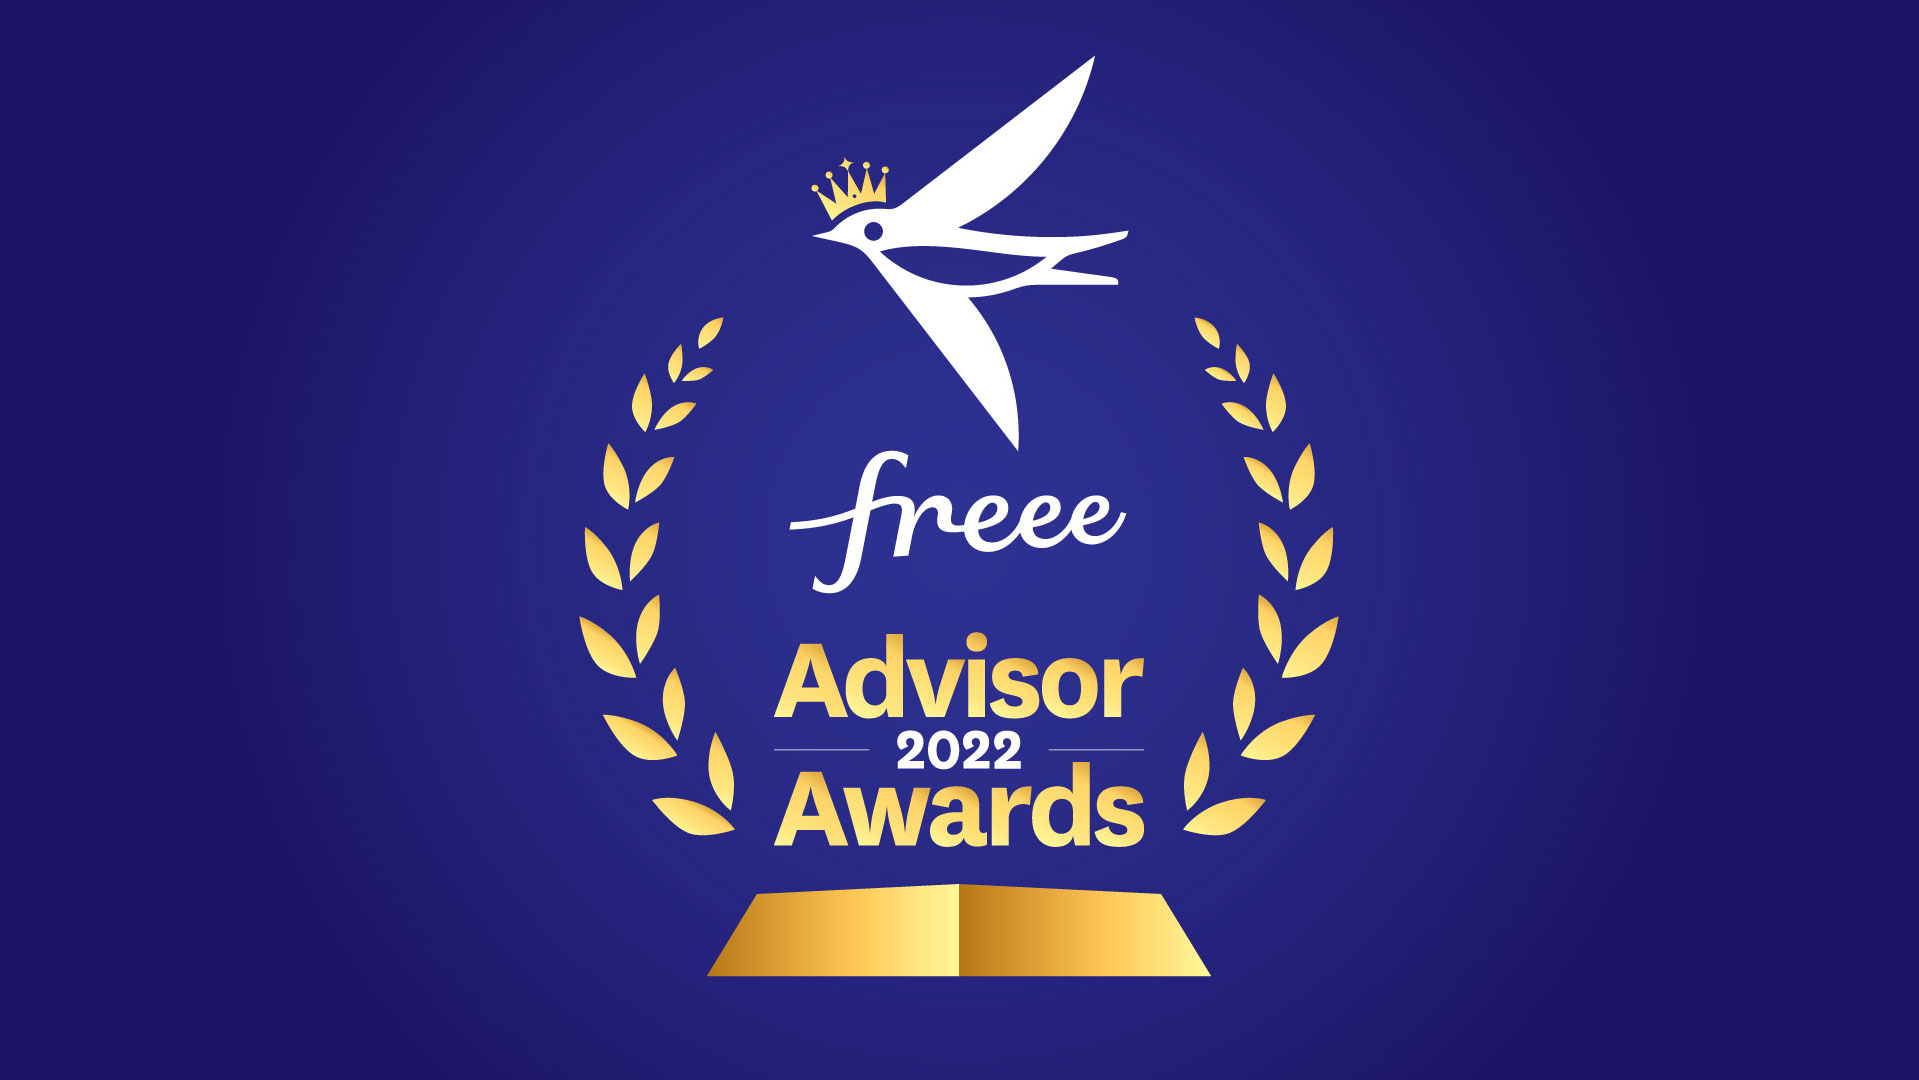 freee Advisor Awards 2022